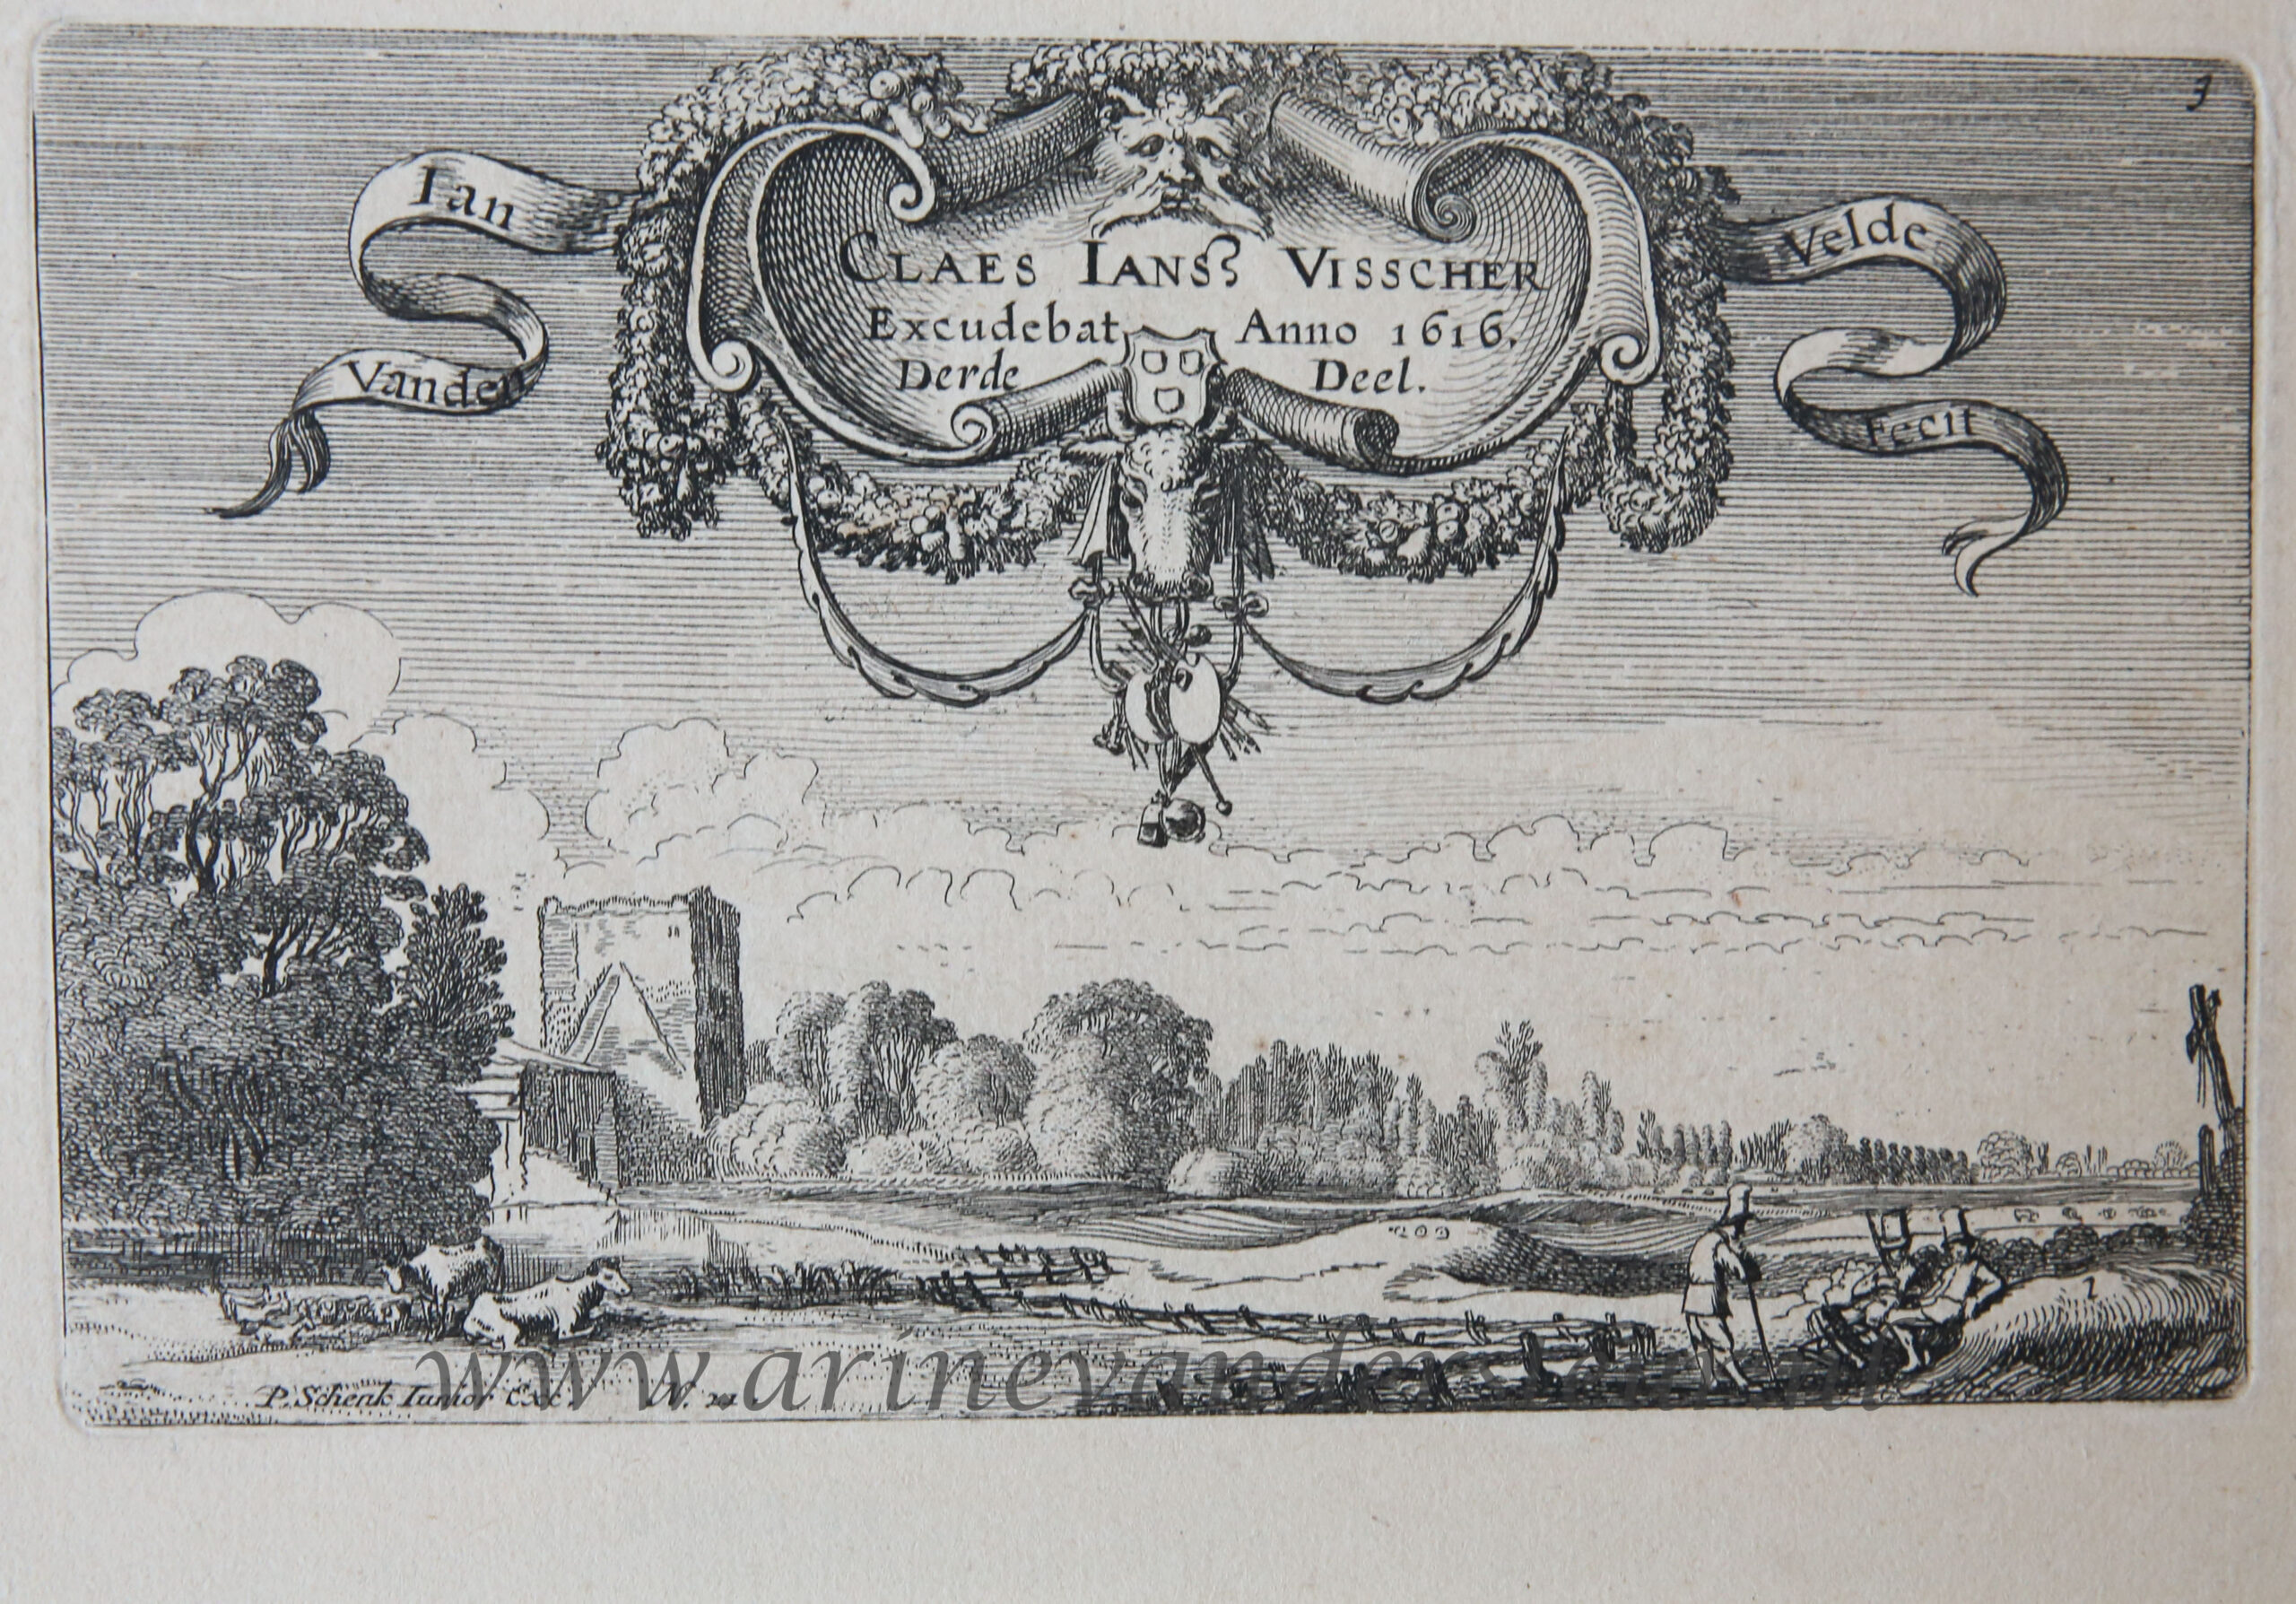 [Antique etching, ets, landscape print] J. v.d. Velde II, Title page of part 3 of the set of Landscapes.